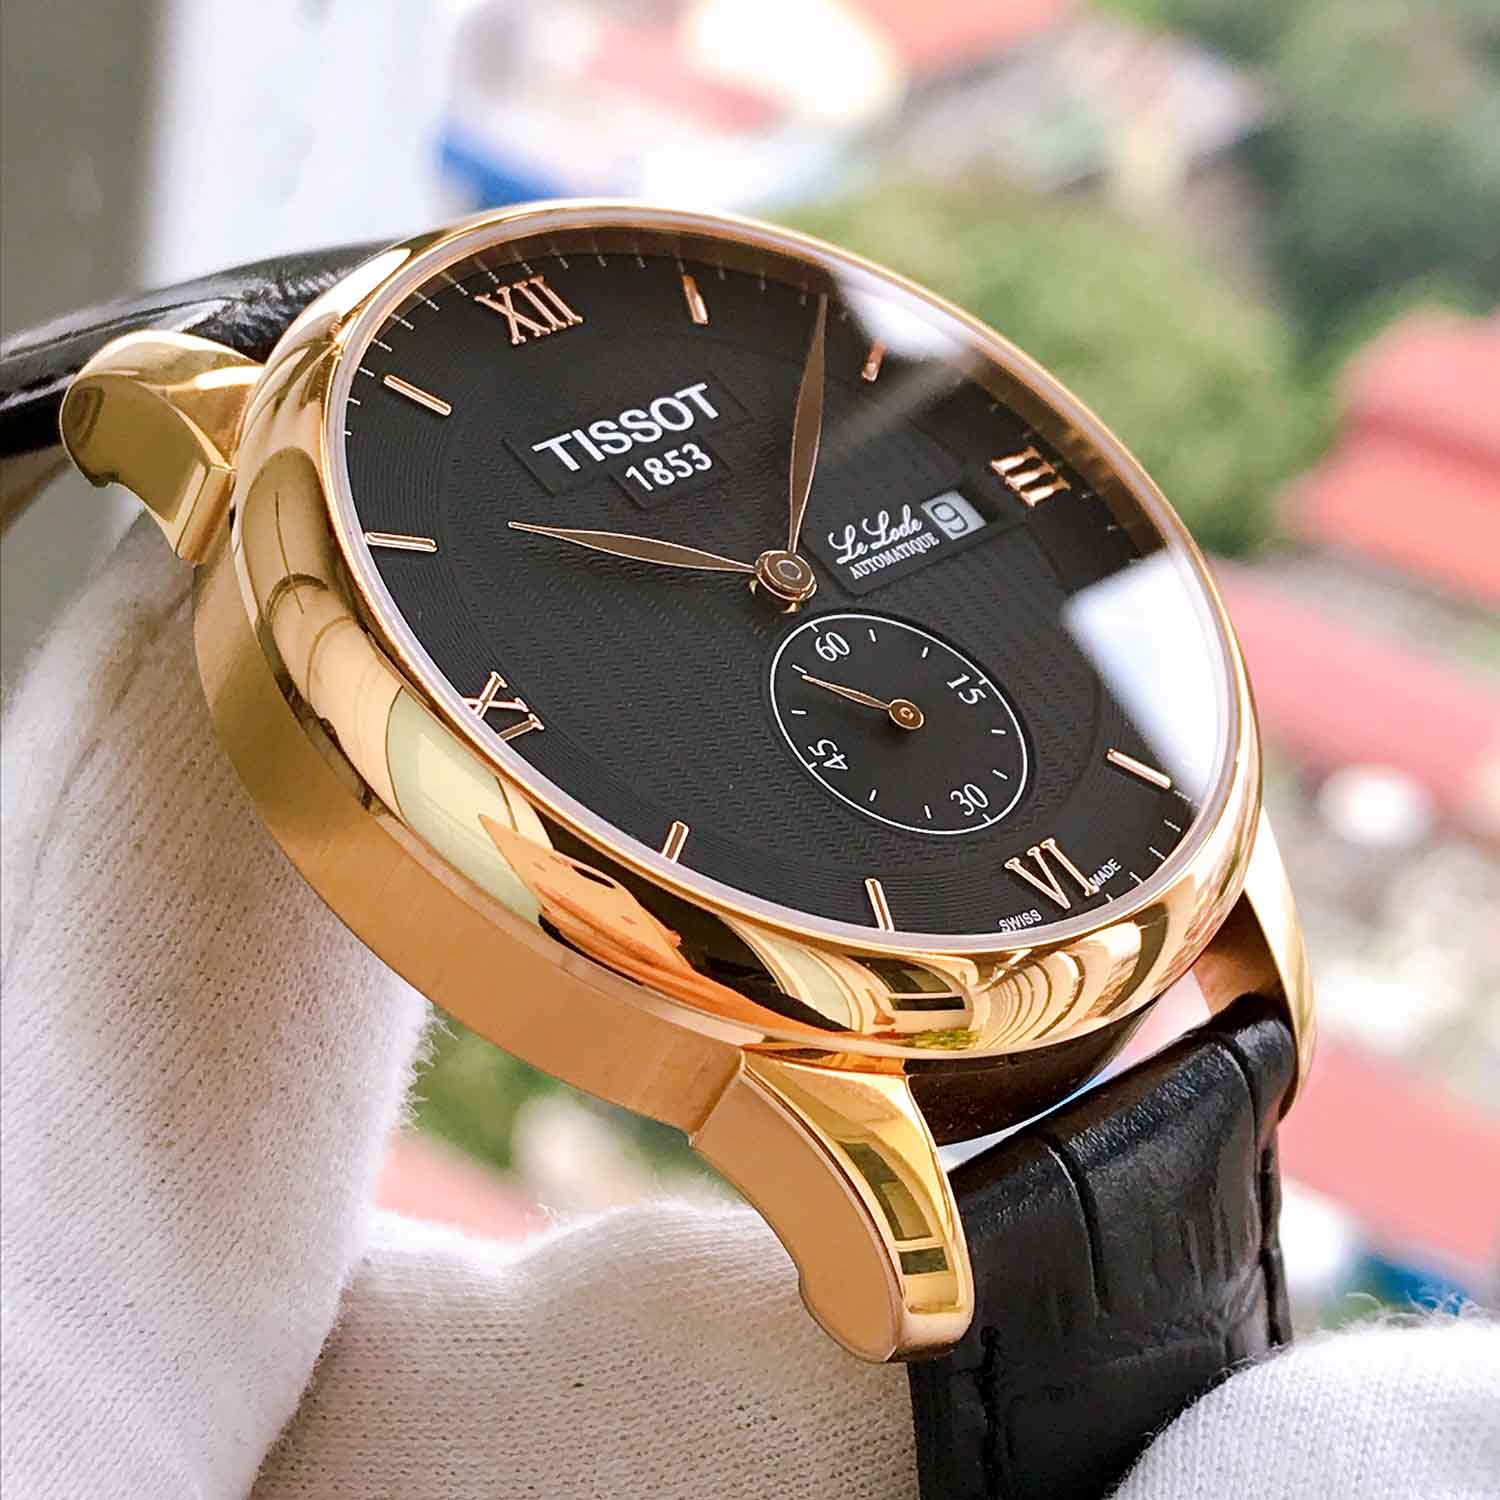 Наручные часы — купить часы на руку в интернет-магазине internat-mednogorsk.ru, фото и цены в каталоге